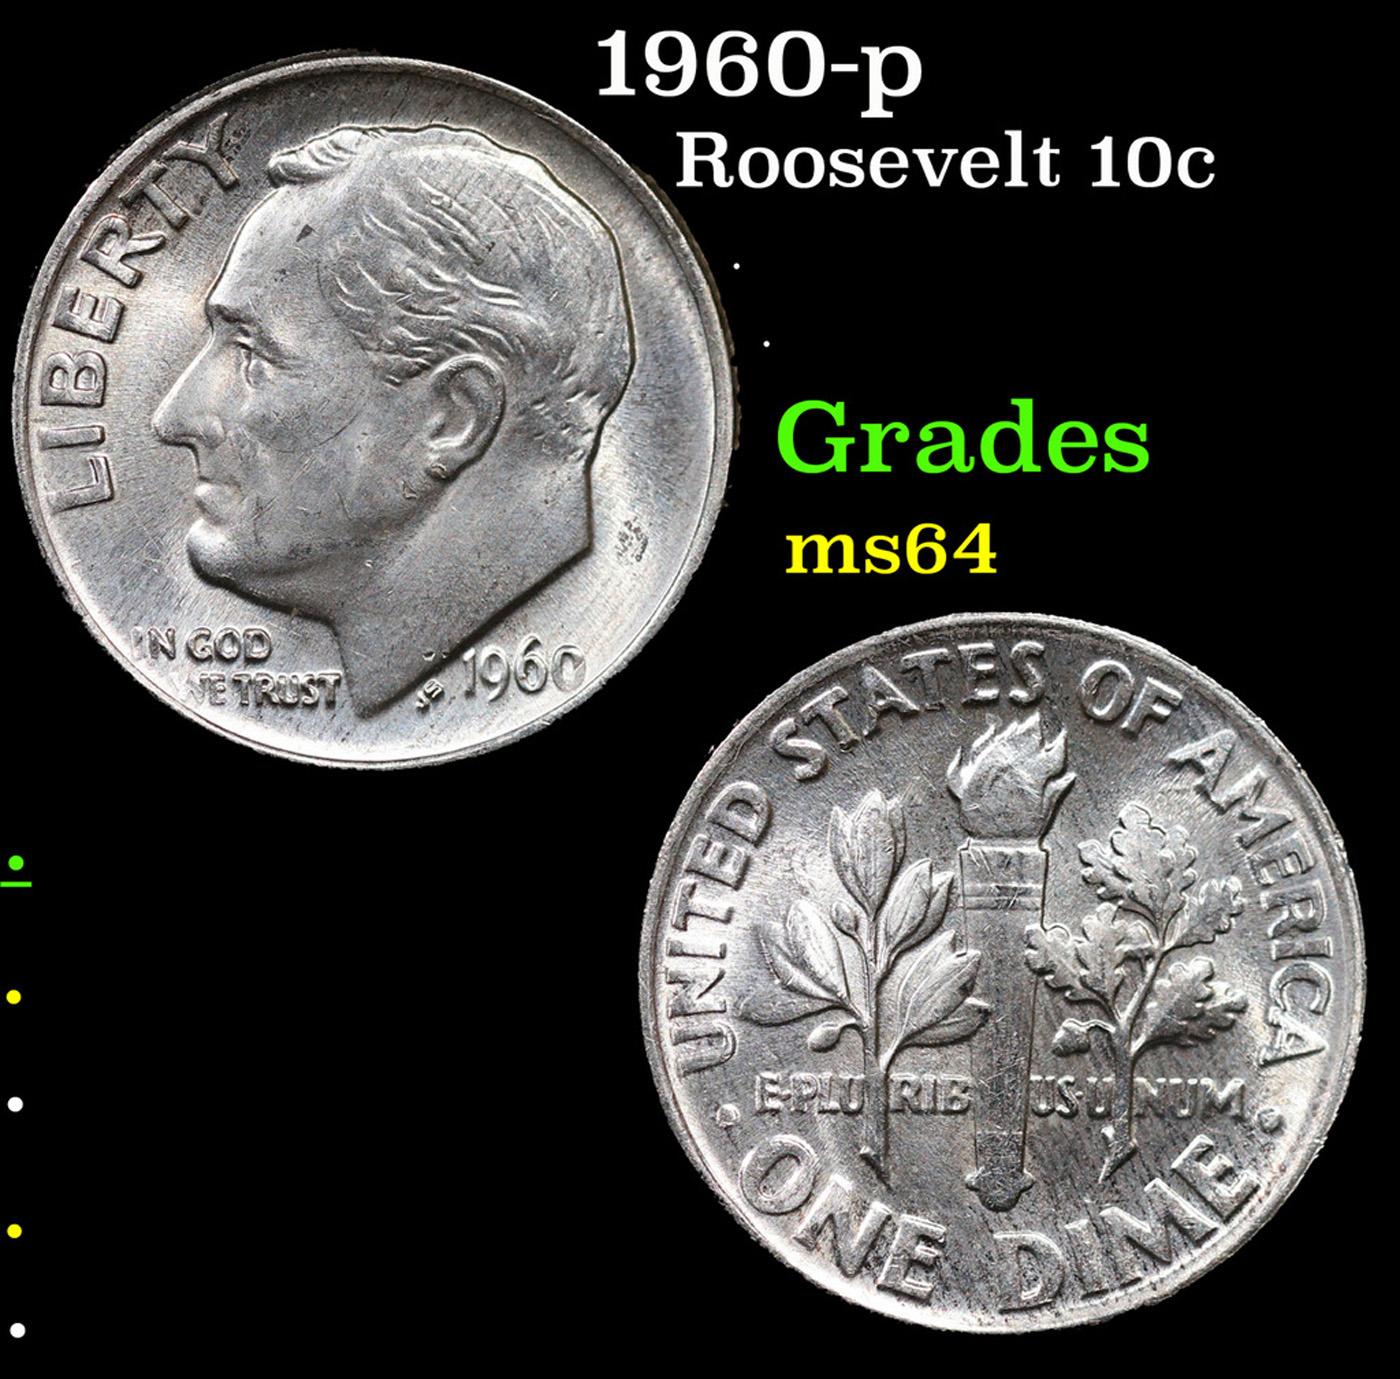 1960-p Roosevelt Dime 10c Grades Choice Unc